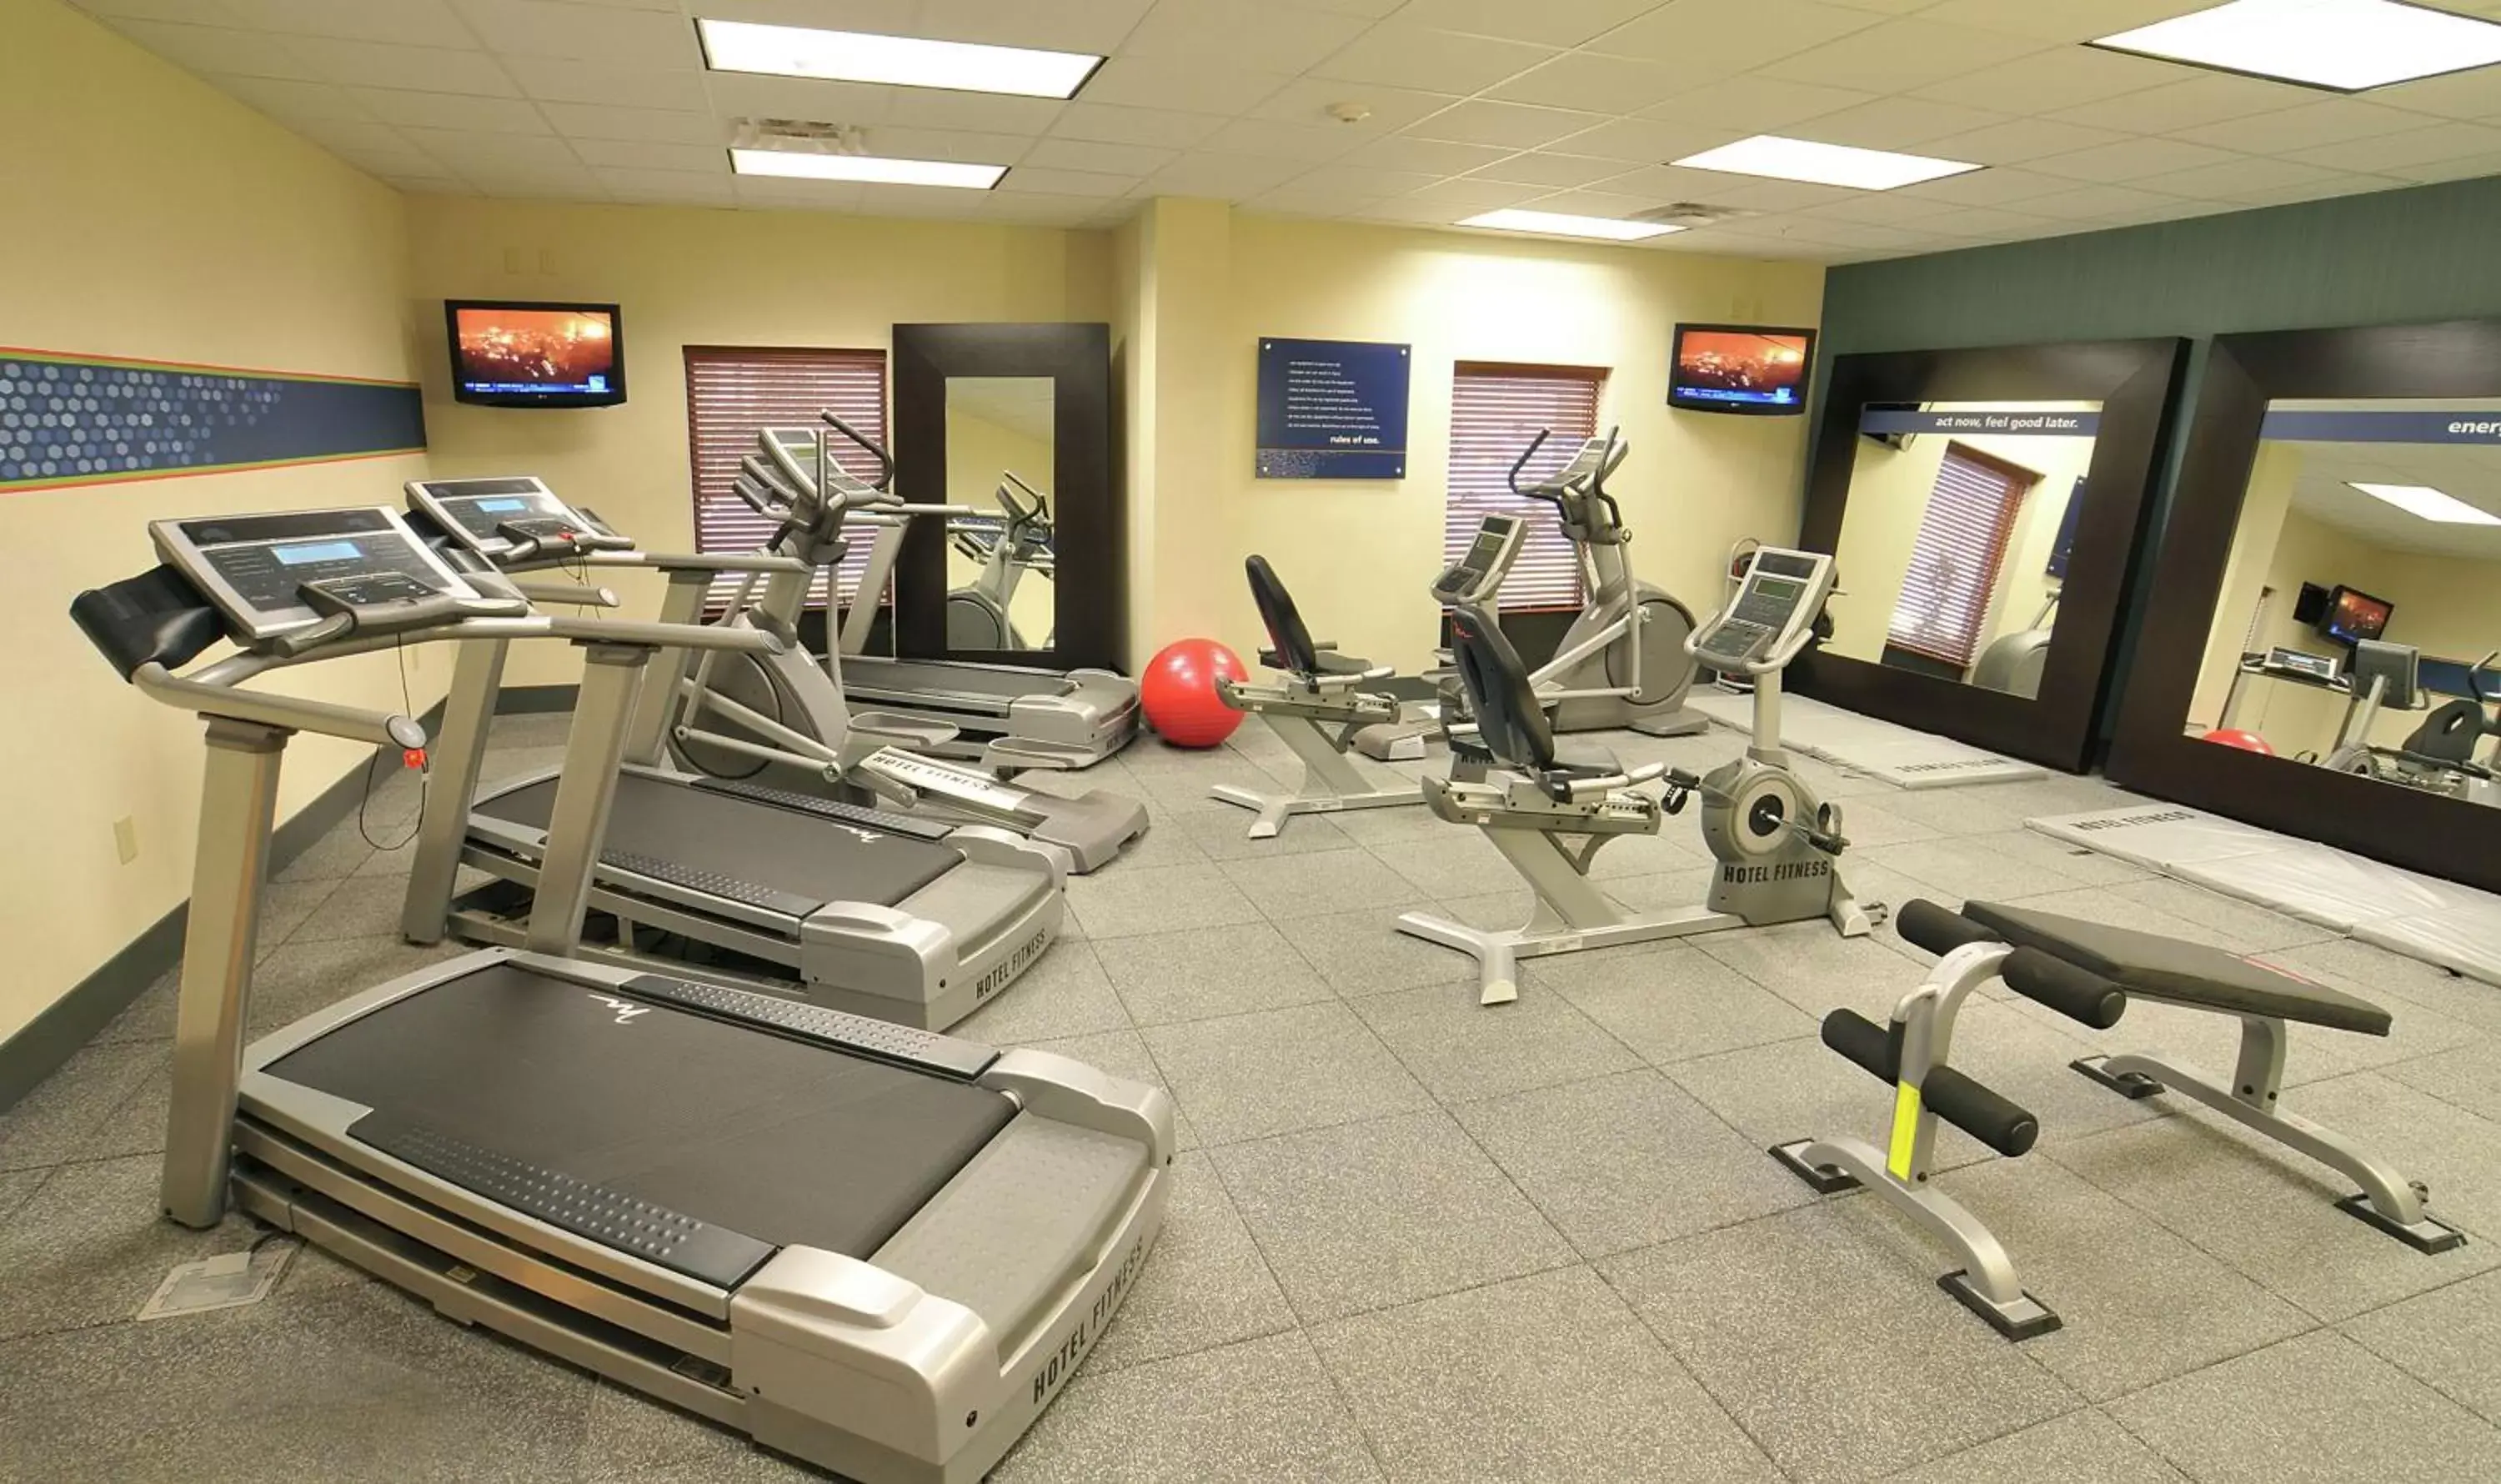 Fitness centre/facilities, Fitness Center/Facilities in Hampton Inn Gadsden/Attalla Interstate 59